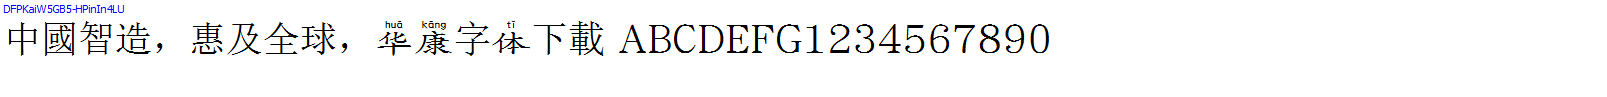 華康字體DFPKaiW5GB5-HPinIn4LU.TTF